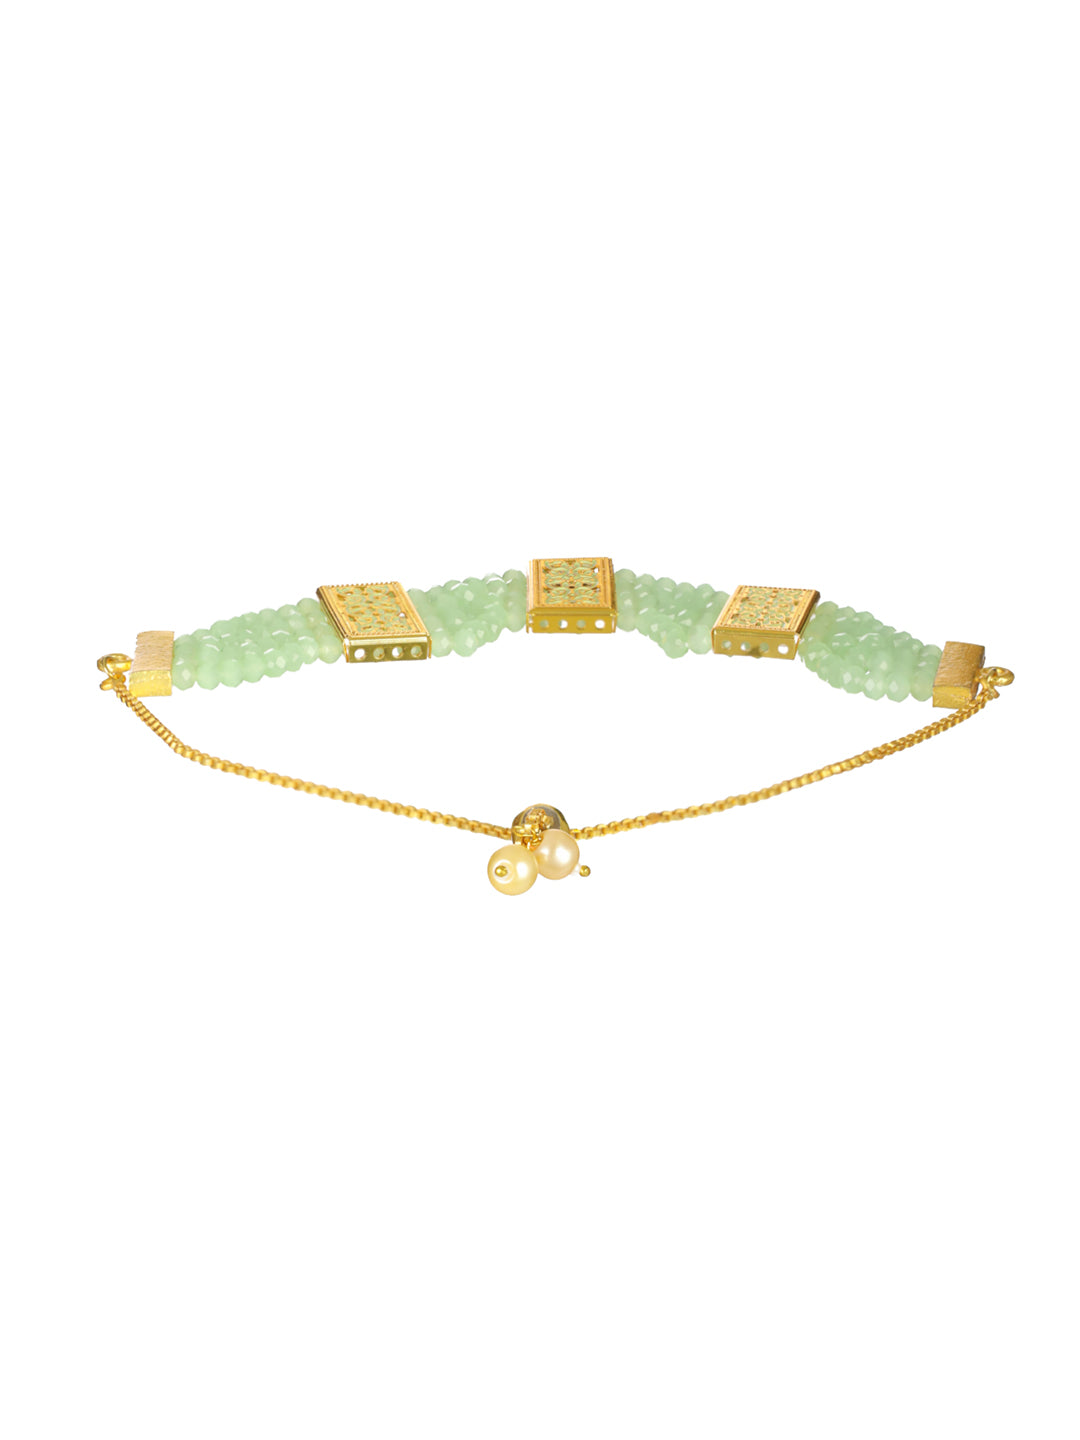 Priyaasi Green Leaf Meenakari Multilayer Gold-Plated Bracelet